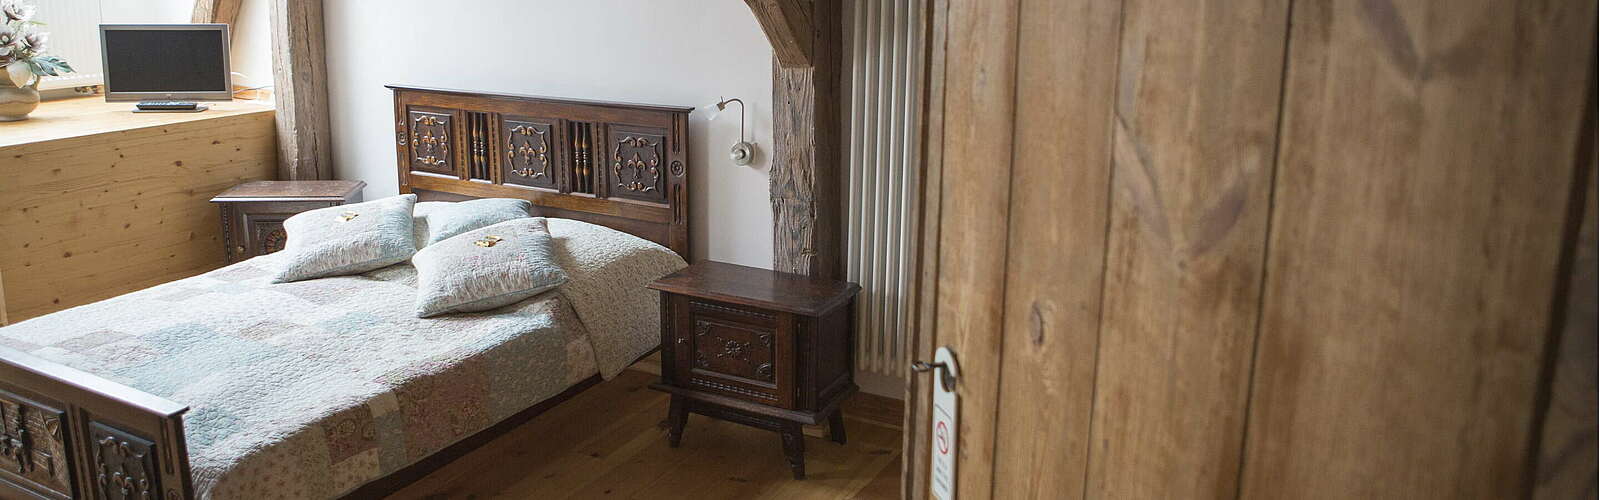 Blick ins historische Schlafzimmer mit bretonischem Bett,
        
    

        Foto: TMB-Fotoarchiv/Steffen Lehmann